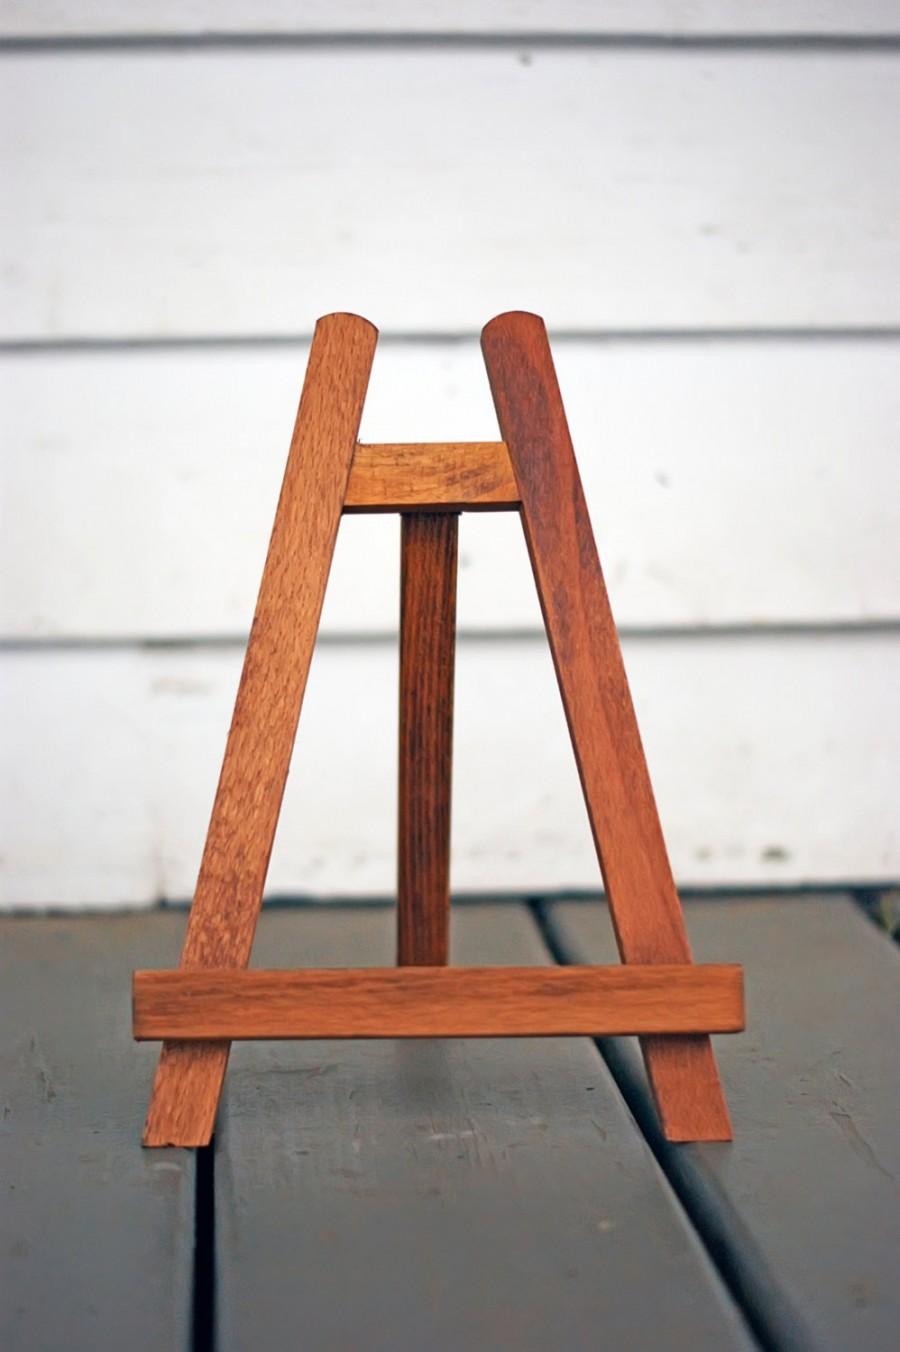 Hochzeit - Easel - Chalkboard Easel - Picture Easel - Wooden Easel - Wood Easel - Table Top Easel - Chalkboard Stand, Picture Stand - Wood Stand